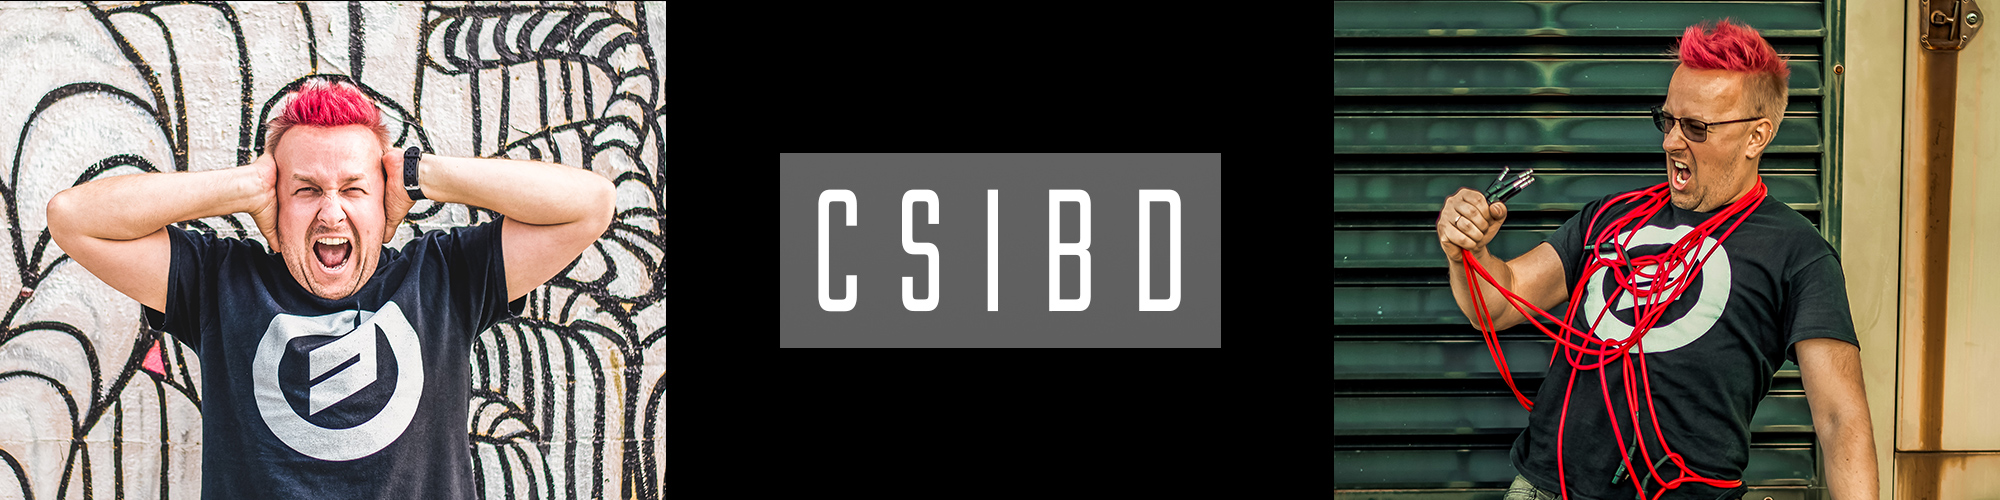 CSIBD